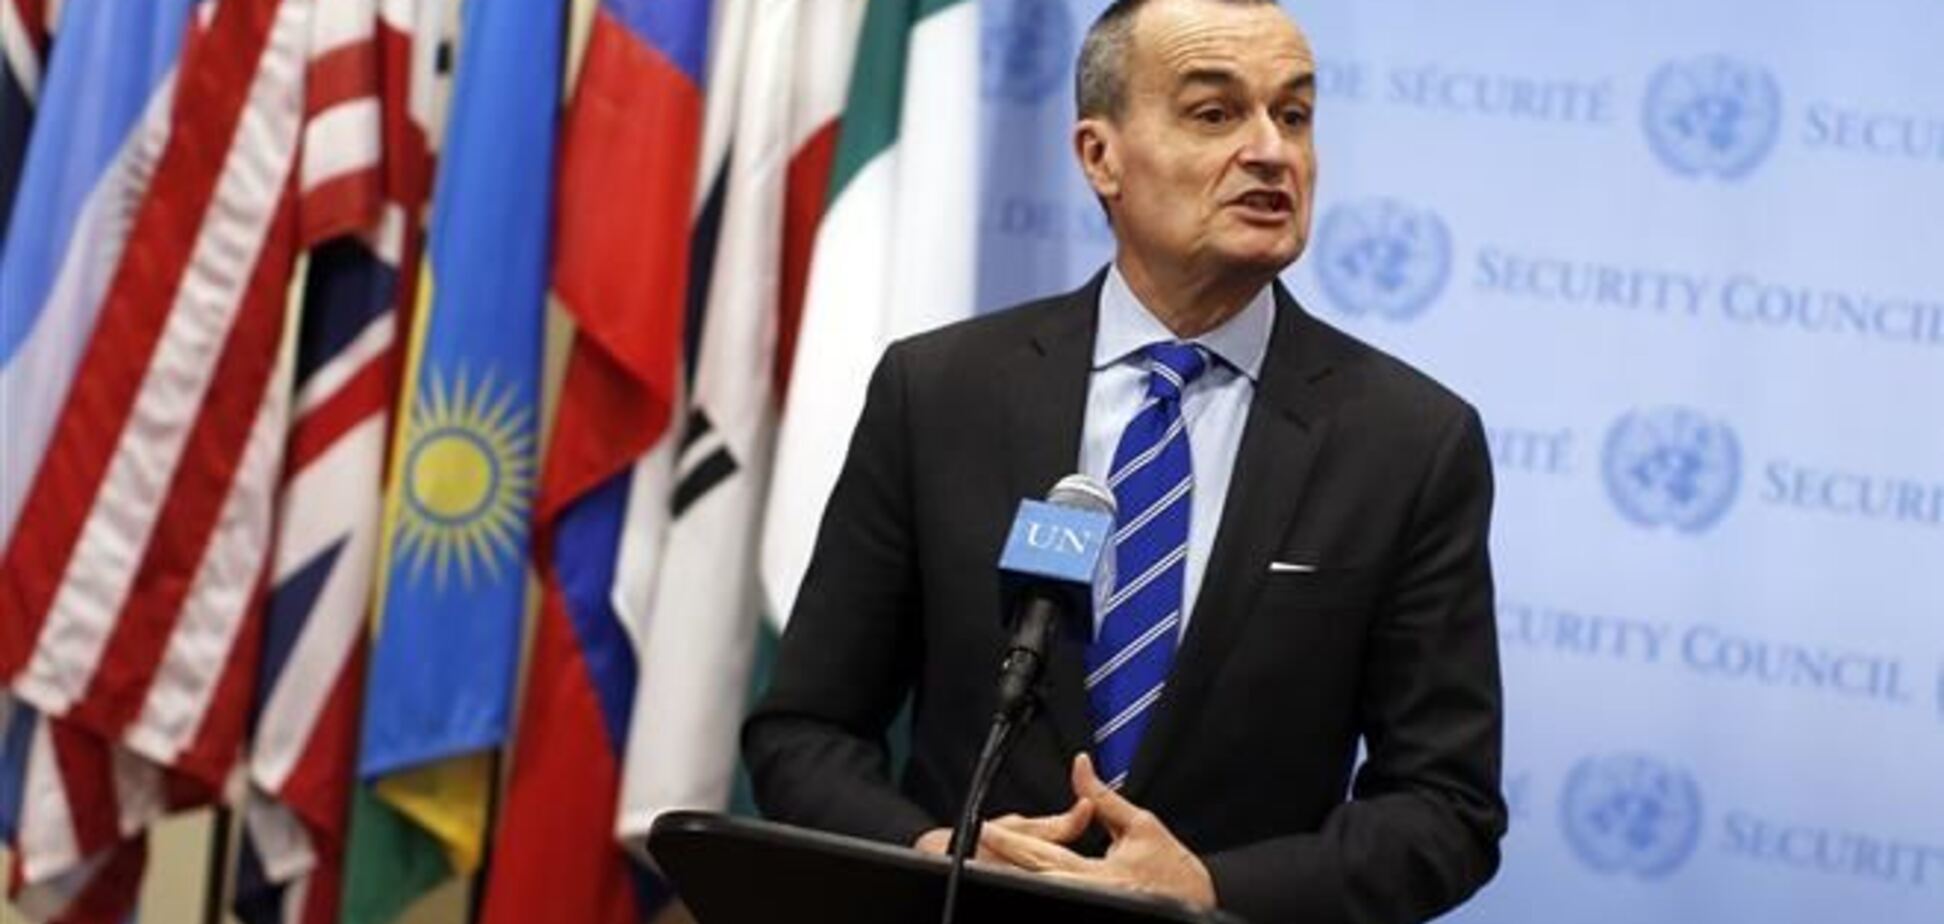 На сході України використовується 'кримський сценарій' - посол Франції в ООН